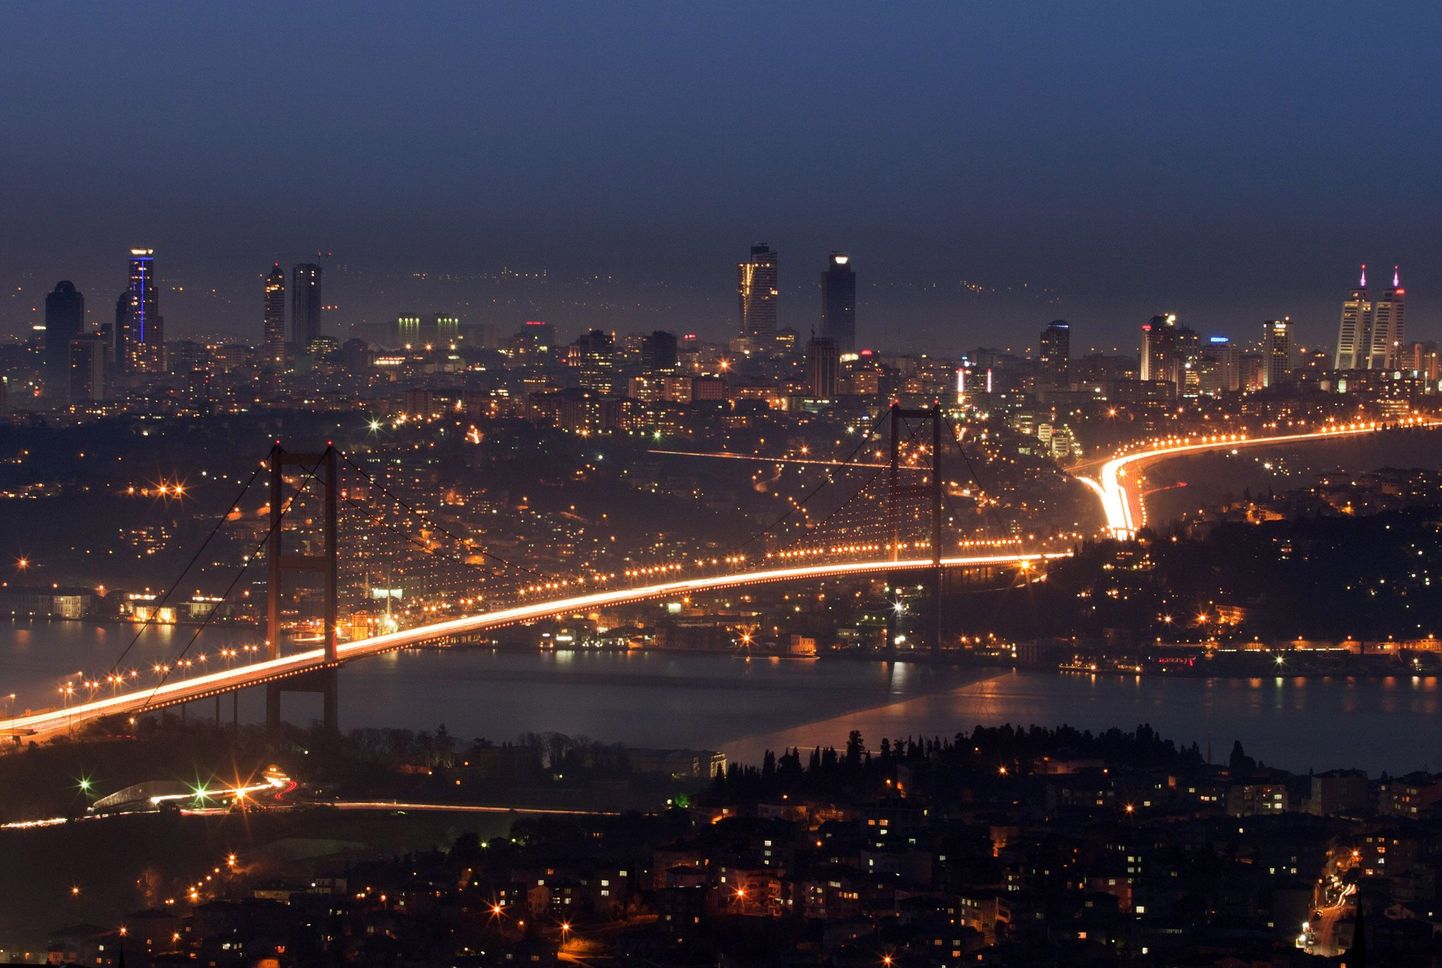 Õhtune tipptund Euroopat ja Aasiat ühendaval Bosporuse sillal Istanbulis.